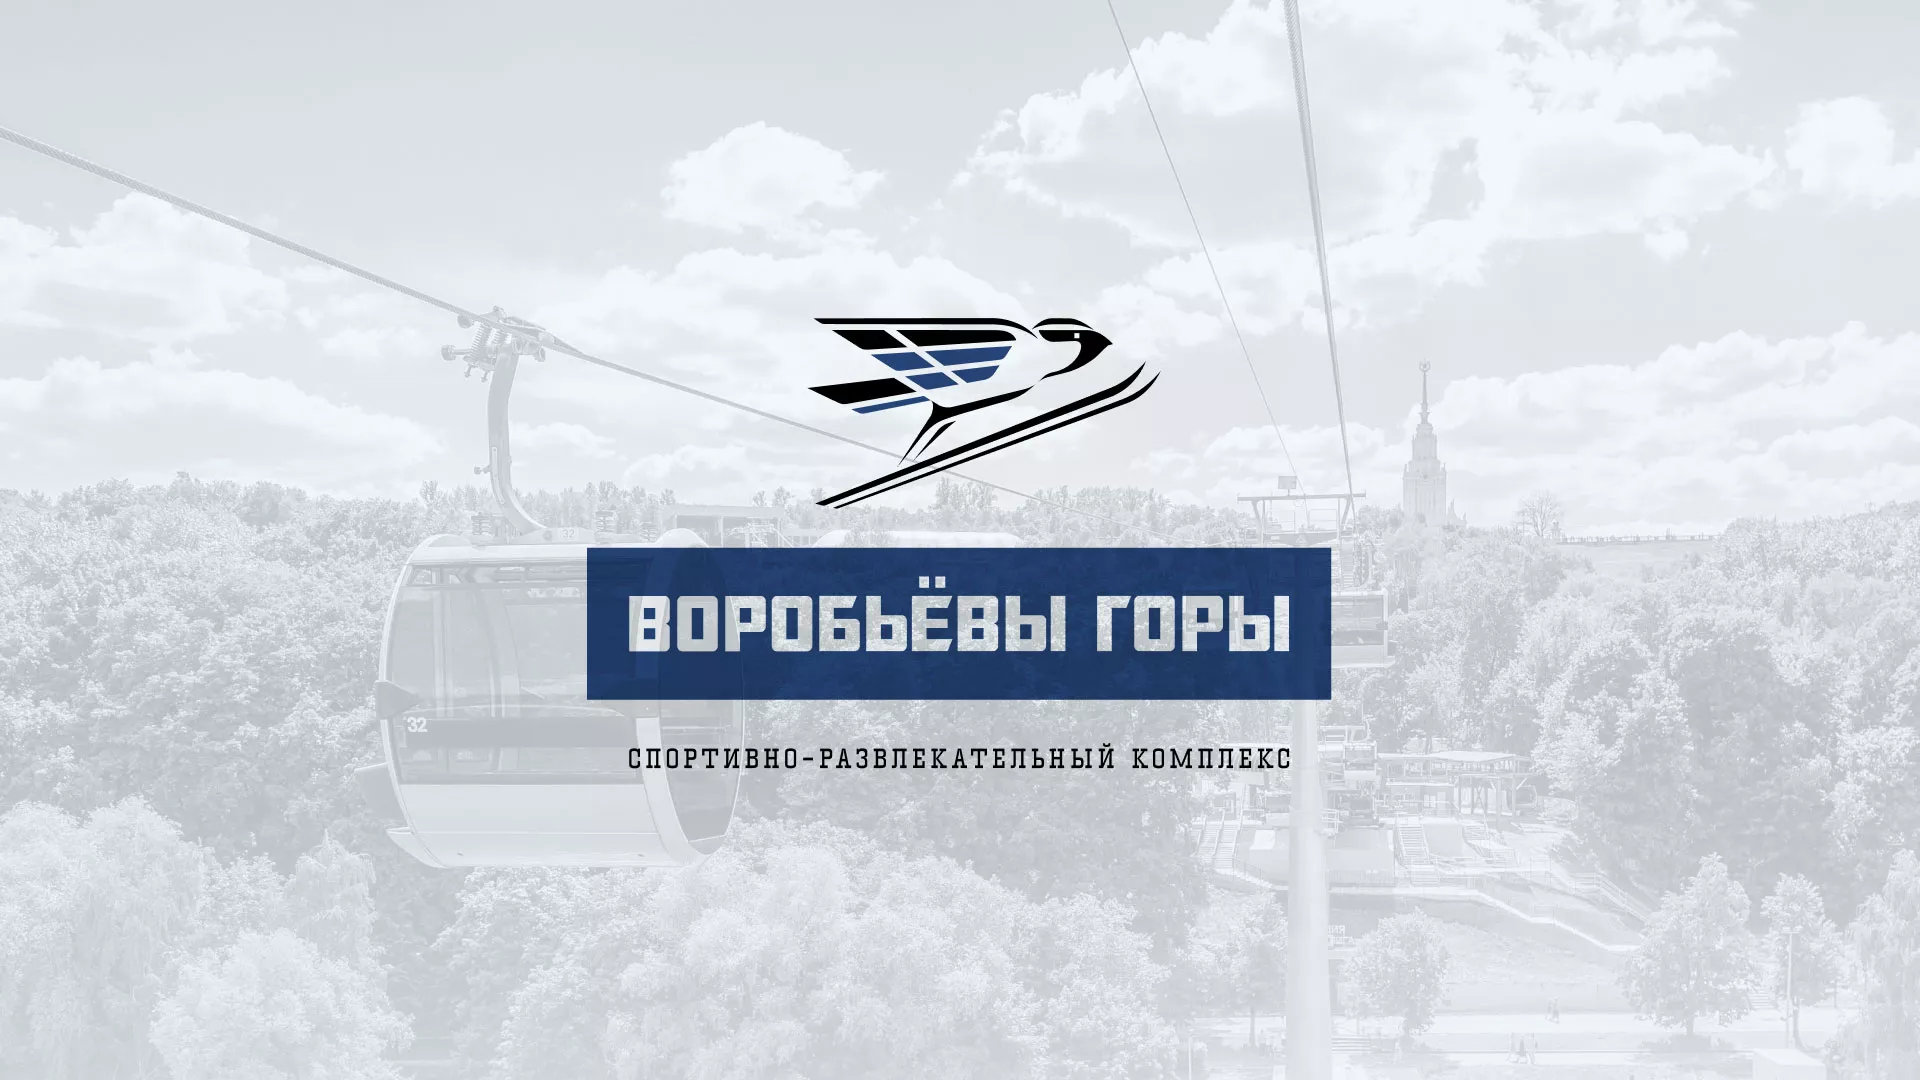 Разработка сайта в Белозерске для спортивно-развлекательного комплекса «Воробьёвы горы»